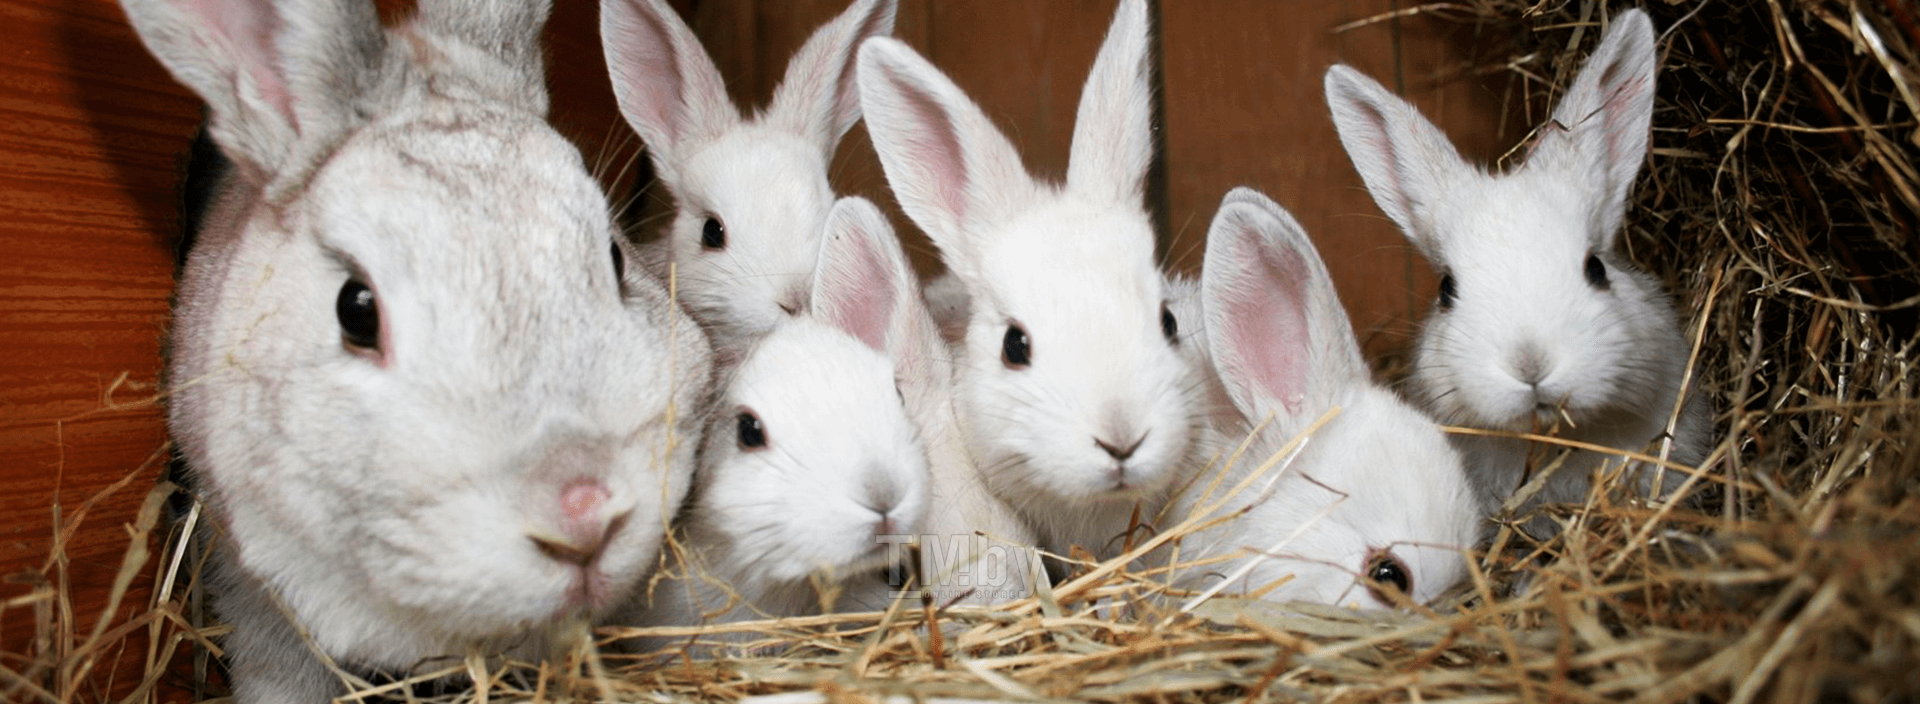 Технология и советы по случке и спариванию кроликов